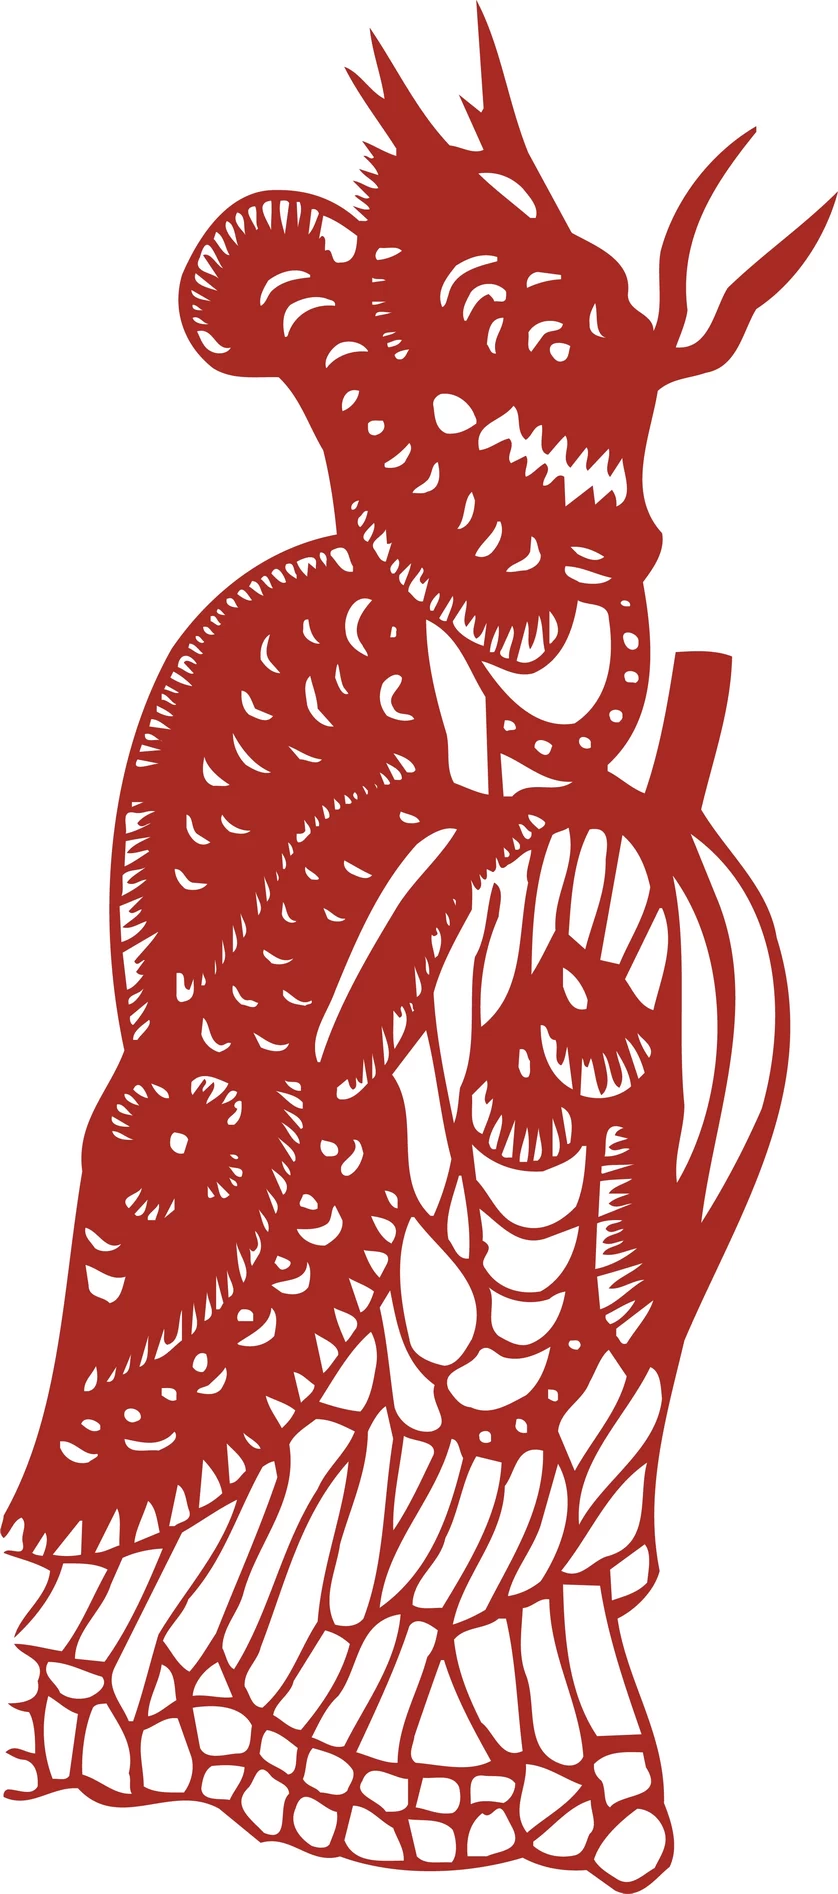 中国风中式传统喜庆民俗人物动物窗花剪纸插画边框AI矢量PNG素材【457】